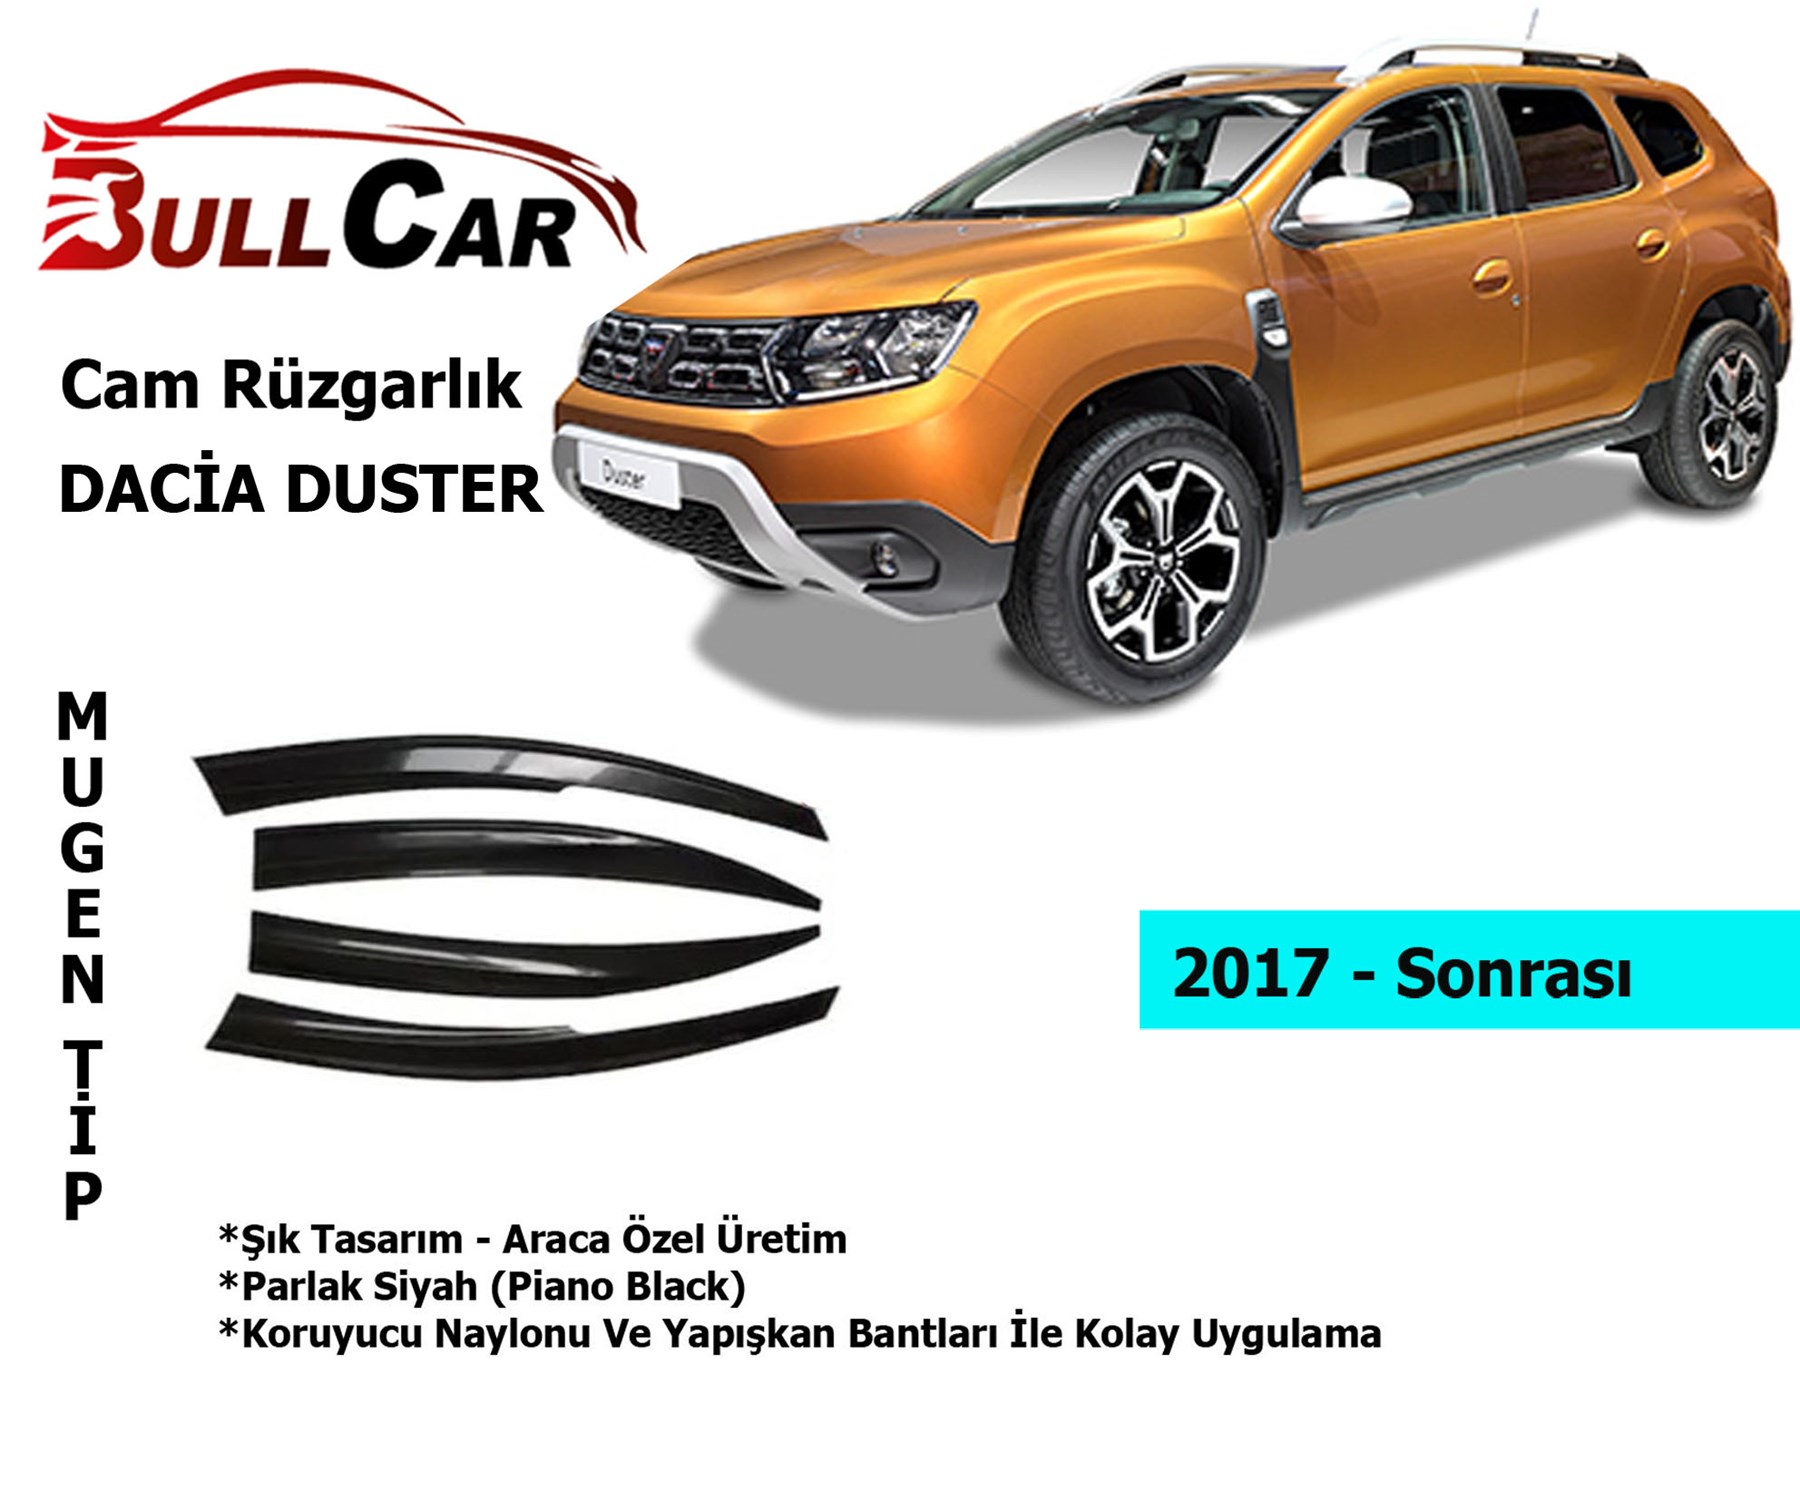 Dacia Duster Cam Rüzgarlık 2017 Sonrası